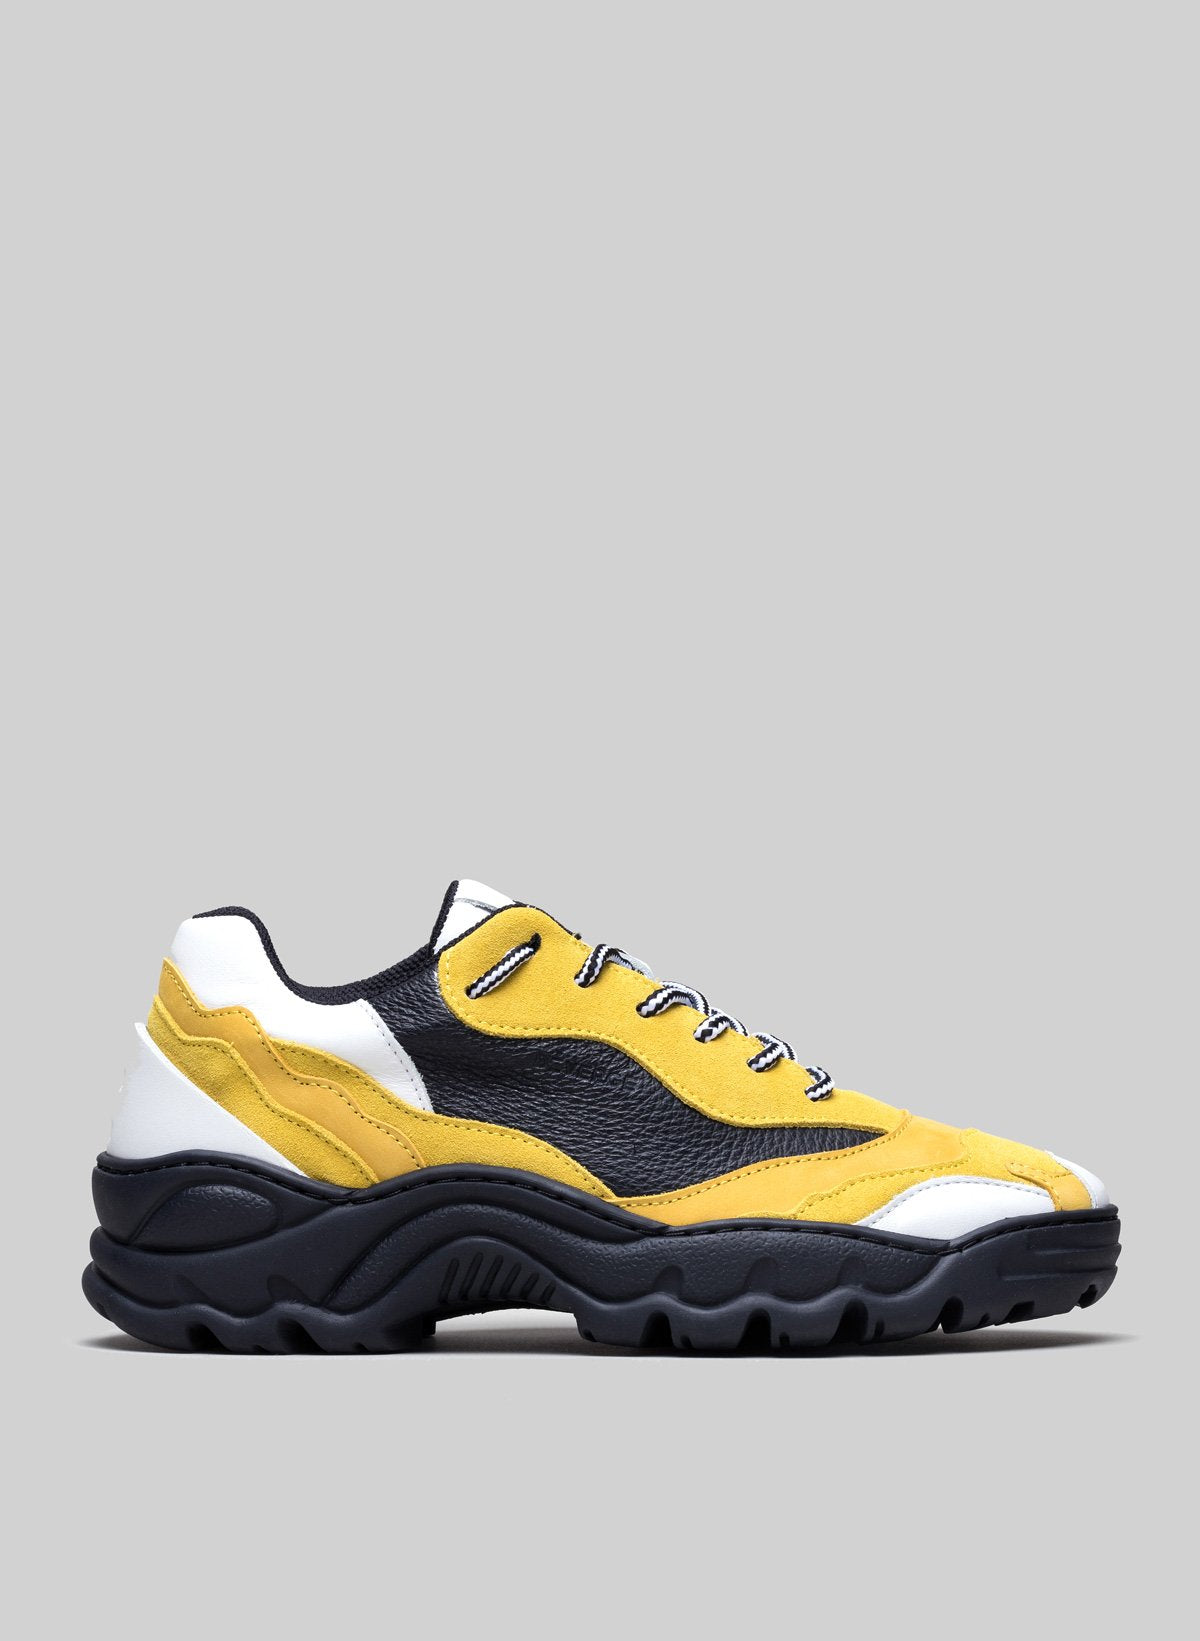 Low top gelb und weiß sneakers mit schwarzer Sohle, individuelle Schuhe von Diverge.